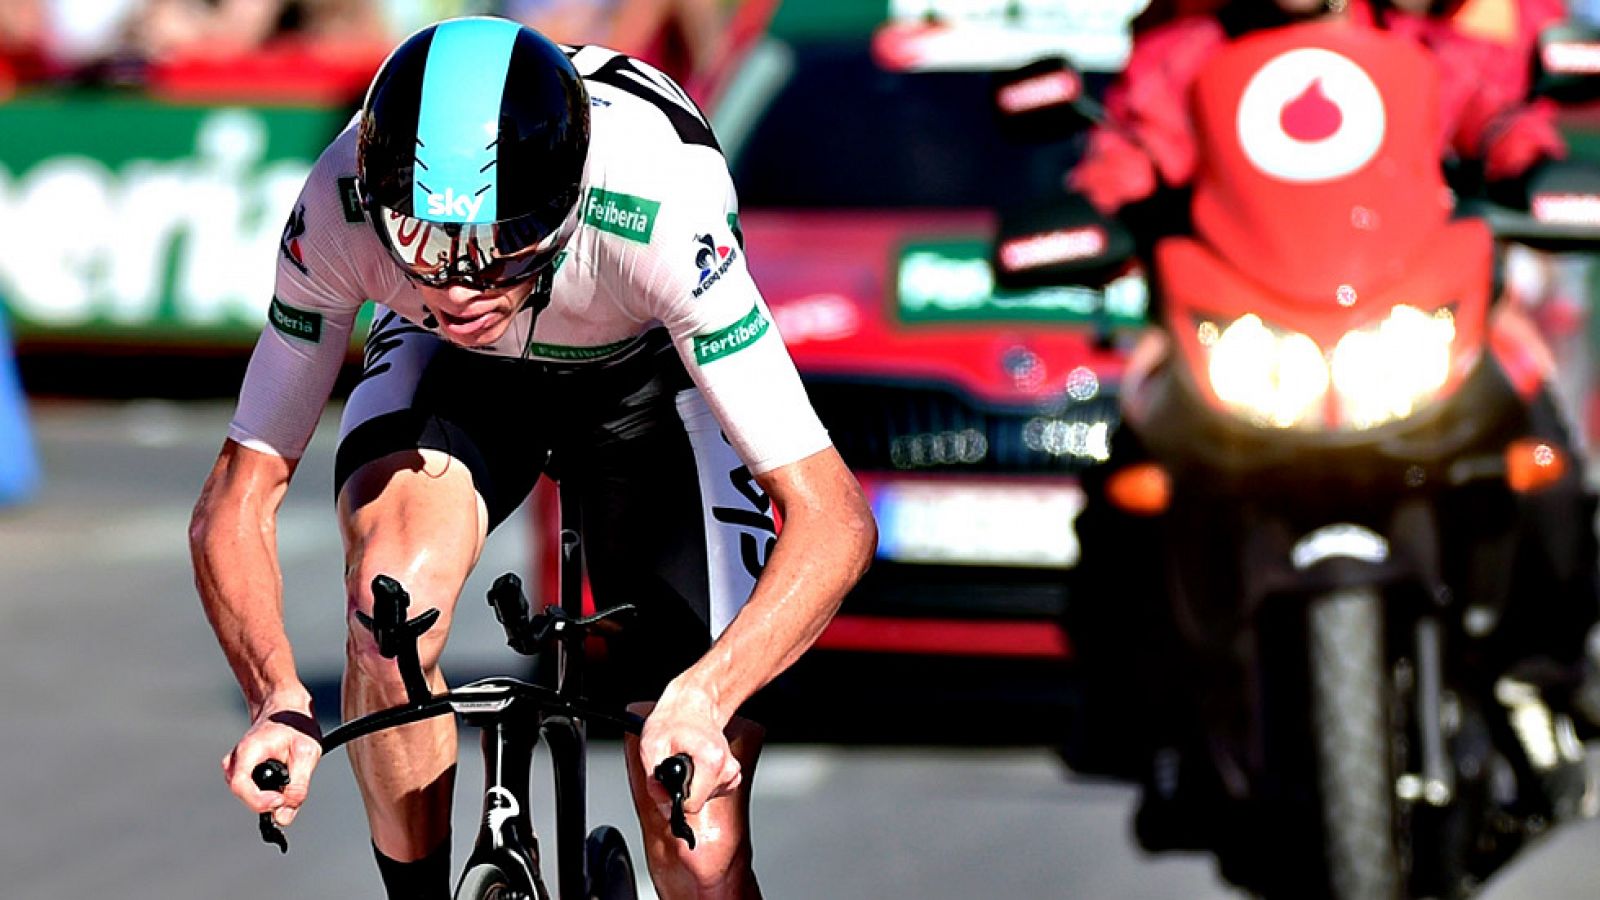 El ciclista británico Chris Froome (Team Sky) se ha impuesto con  autoridad este viernes en la decimonovena etapa de la Vuelta a  España, una contrarreloj disputada entre Xàbia y Calpe sobre 37  kilómetros, y se ha ganado el derecho a pugnar hasta el